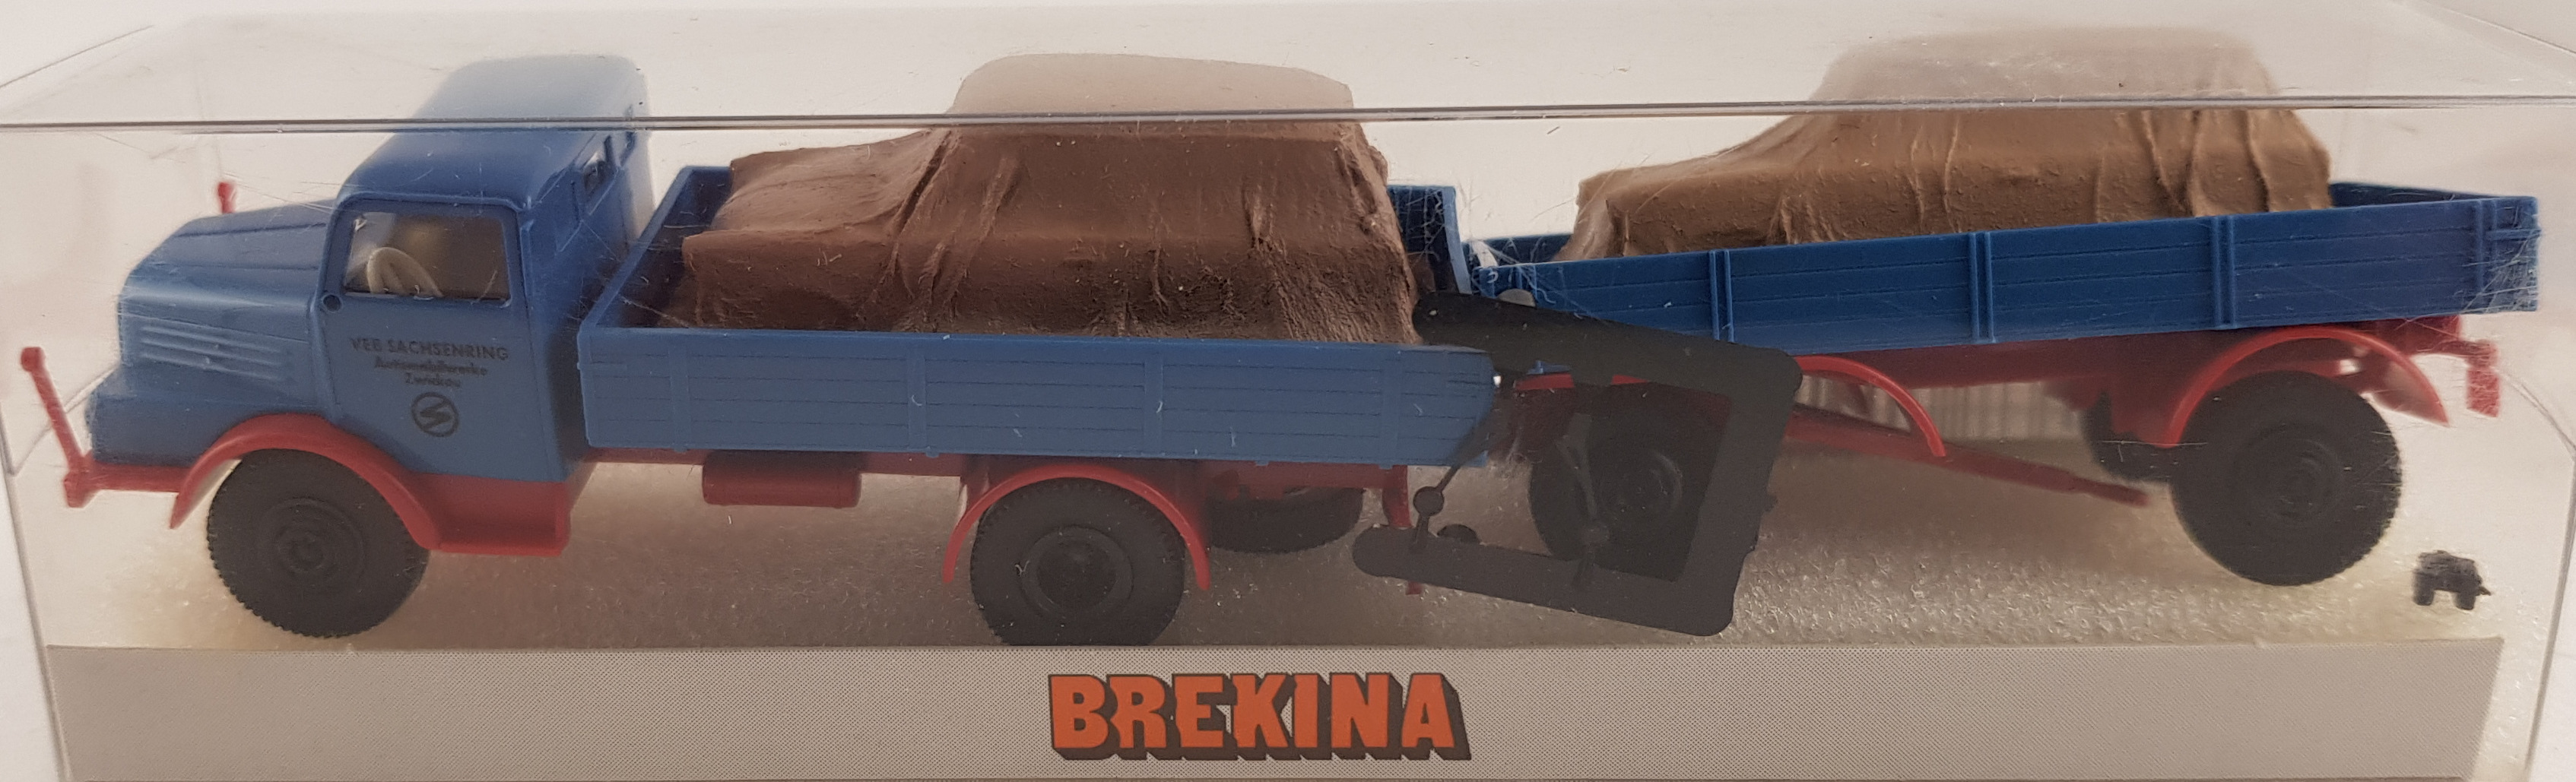 Brekina 71518 Biltransport med Trabanter, skala H0, K14